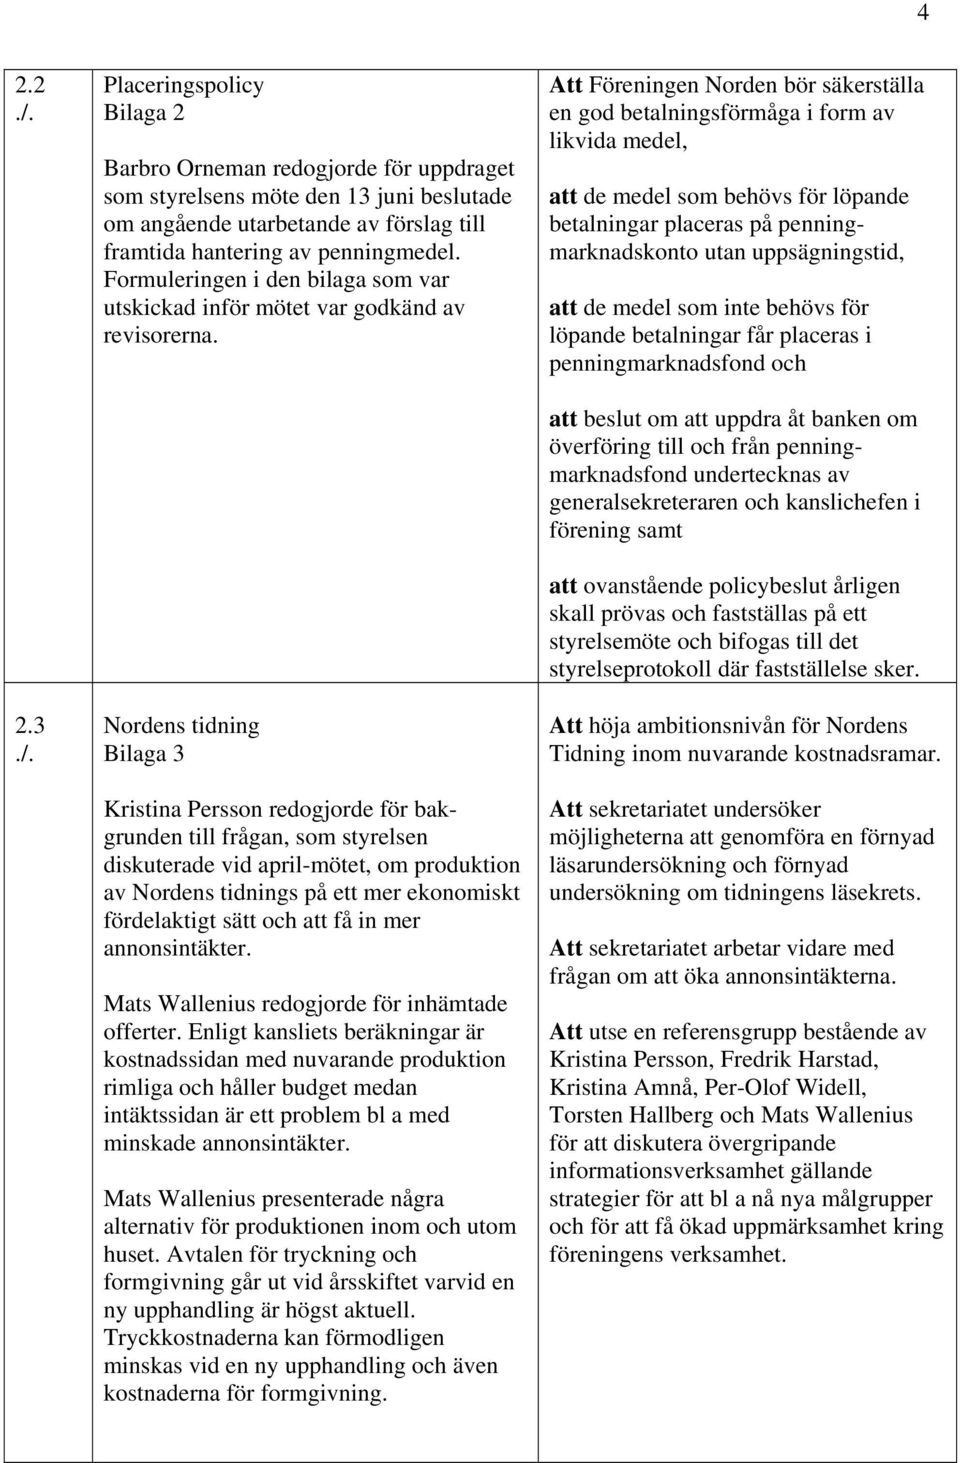 Nordens tidning Bilaga 3 Kristina Persson redogjorde för bakgrunden till frågan, som styrelsen diskuterade vid april-mötet, om produktion av Nordens tidnings på ett mer ekonomiskt fördelaktigt sätt